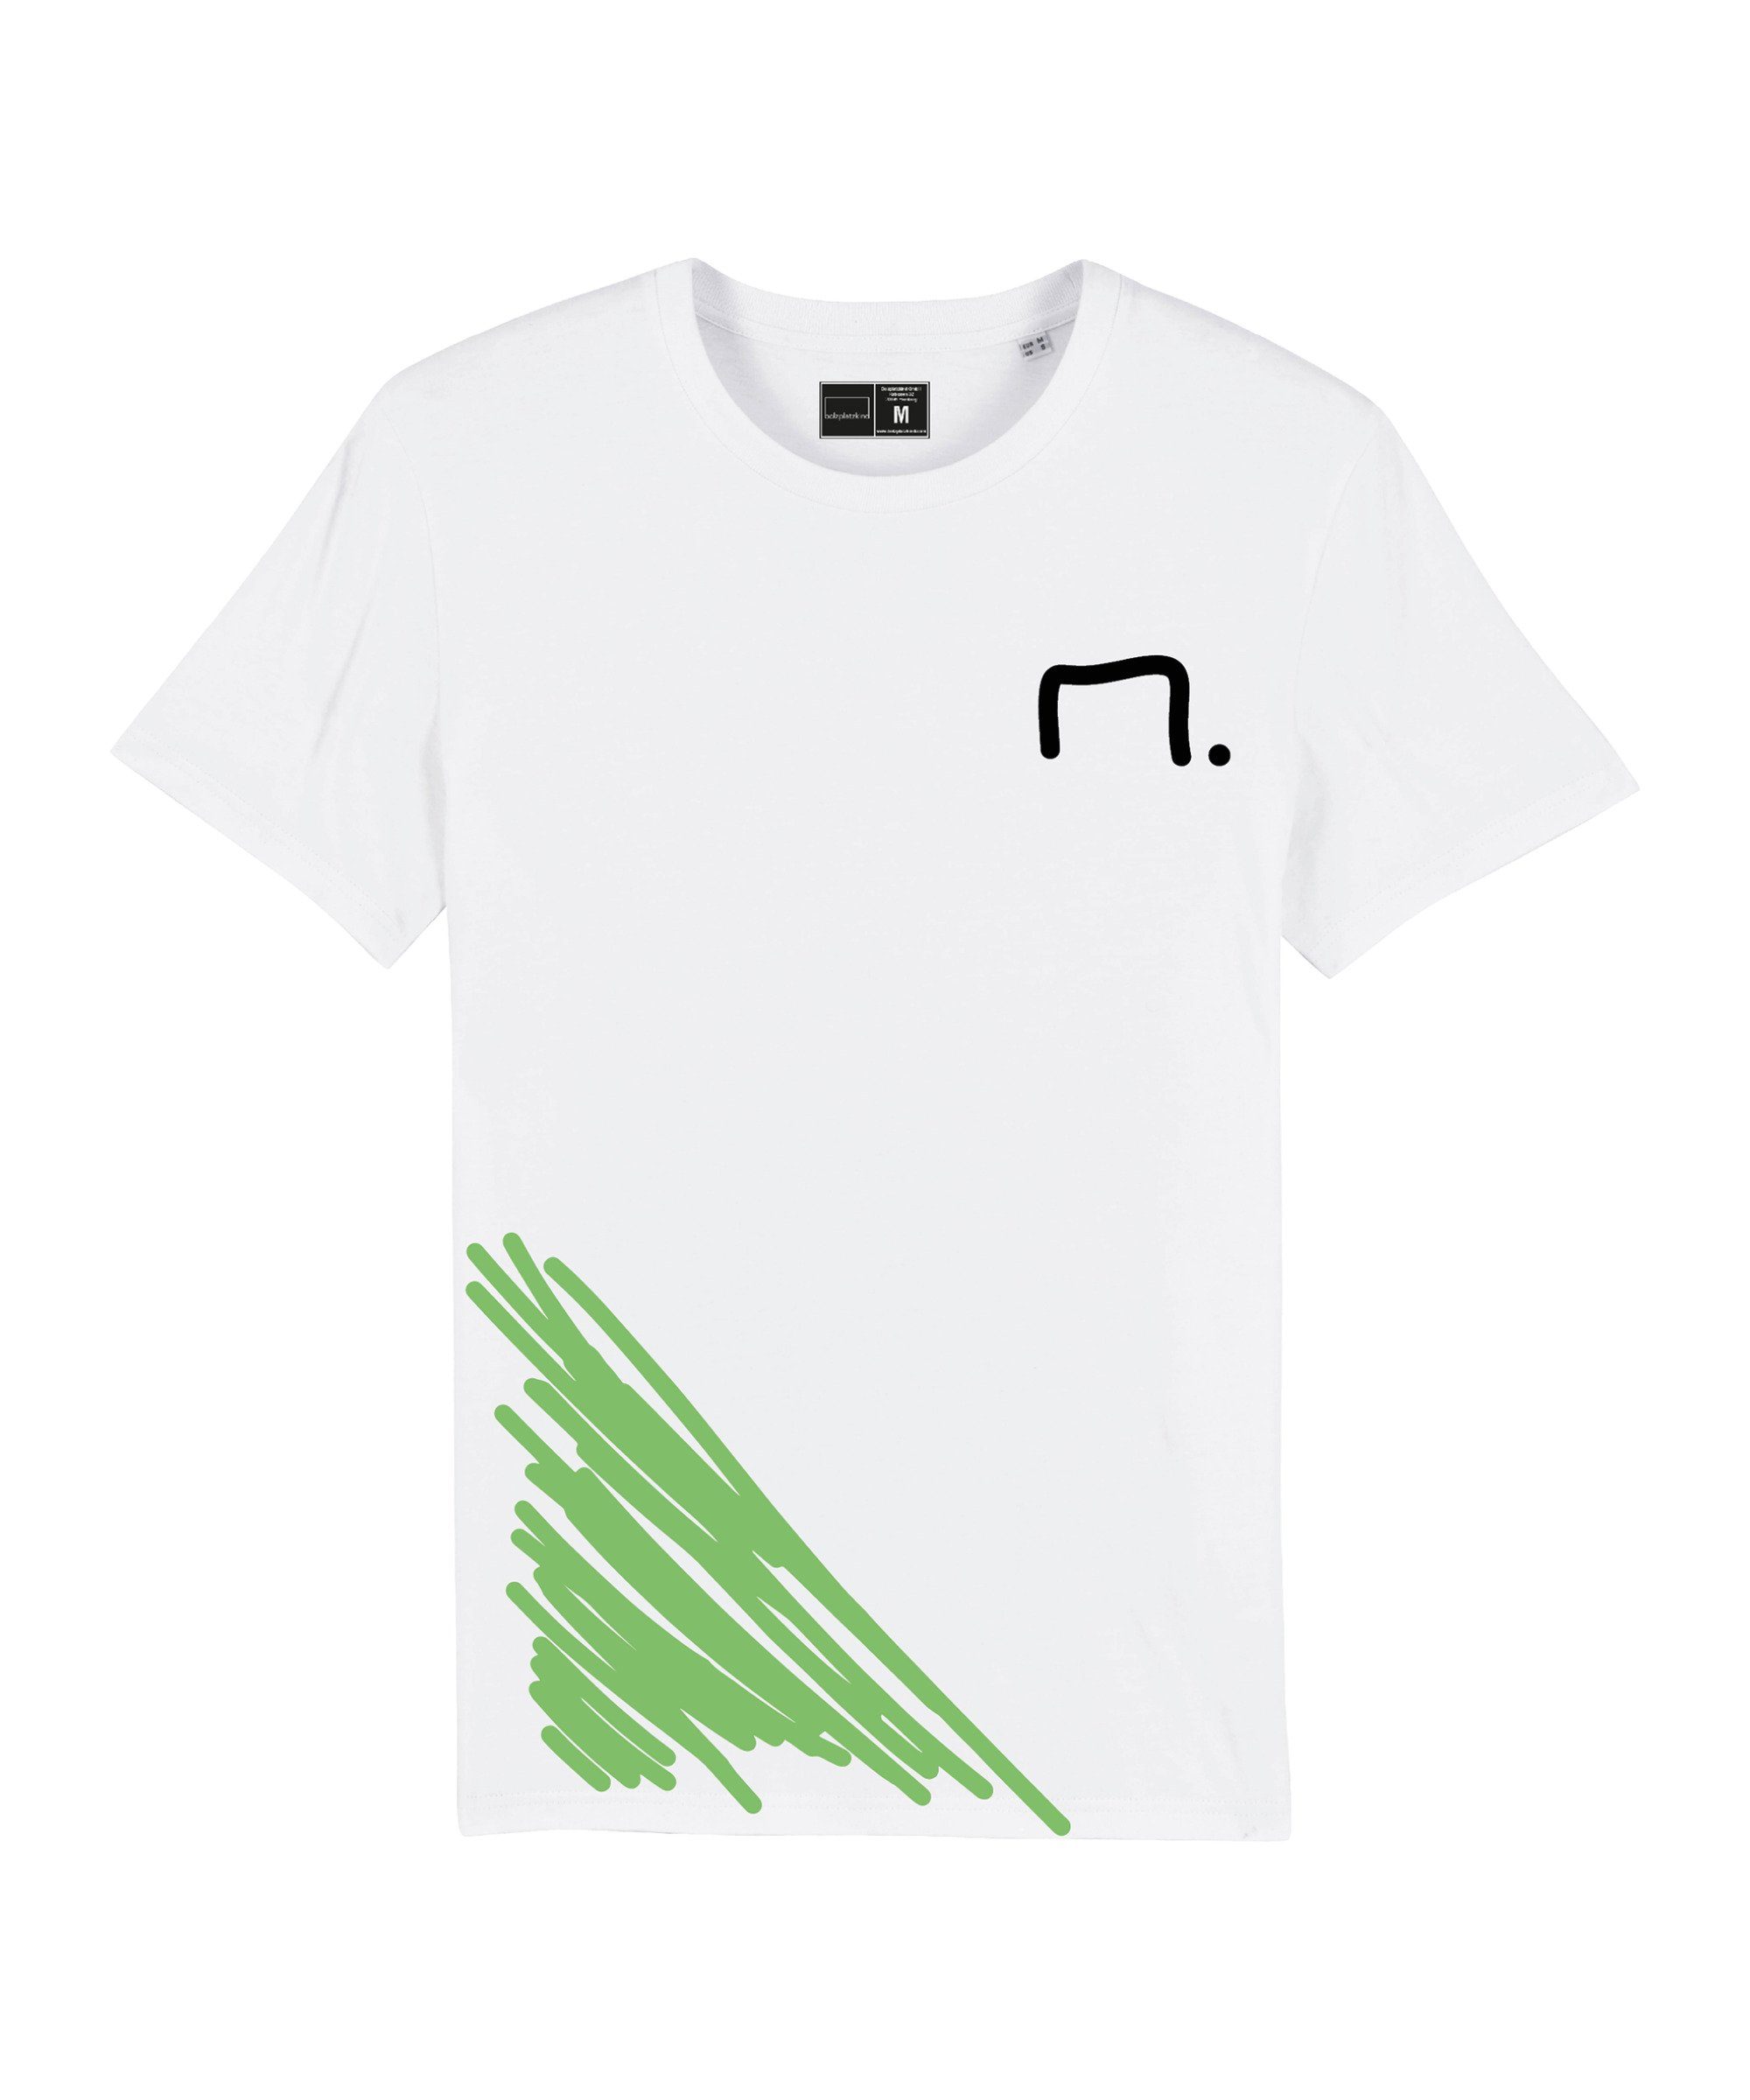 Bolzplatzkind T-Shirt "Field" T-Shirt Nachhaltiges Produkt | T-Shirts